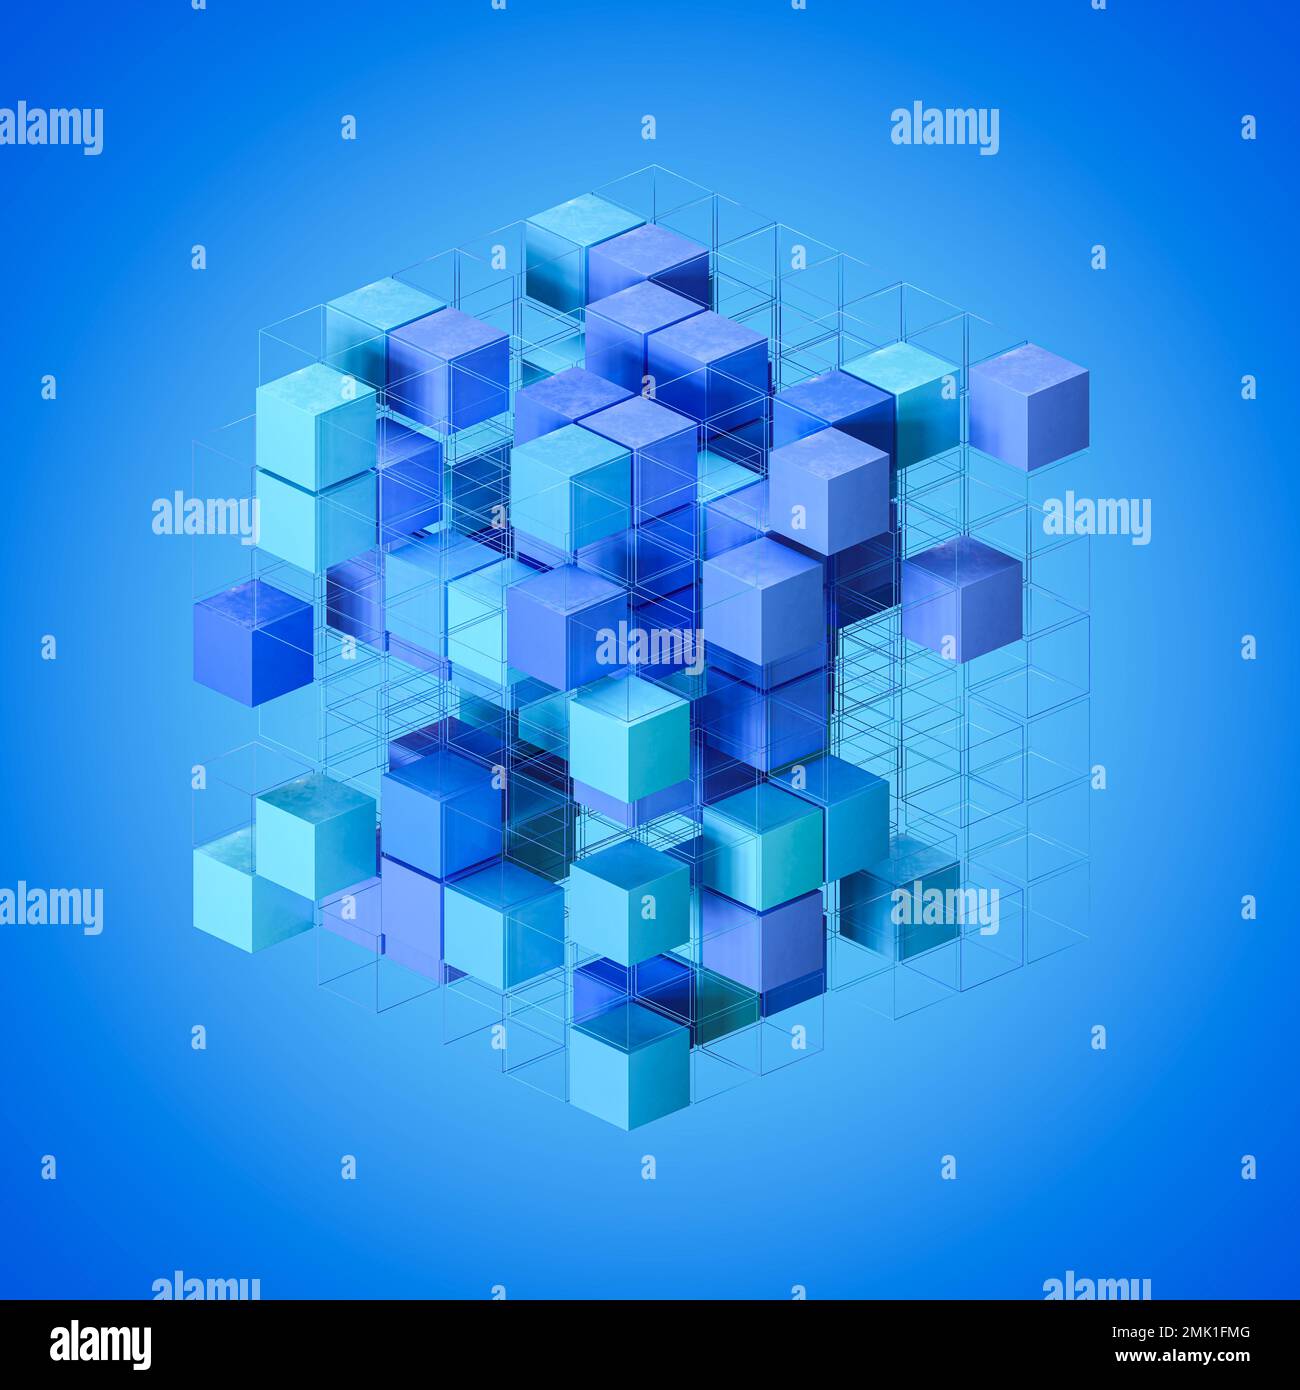 Análisis de datos, concepto de Big Data. Cubos y wireframes de cubo dispuestos en espacio tridimensional. Sombras de azul. Foto de stock